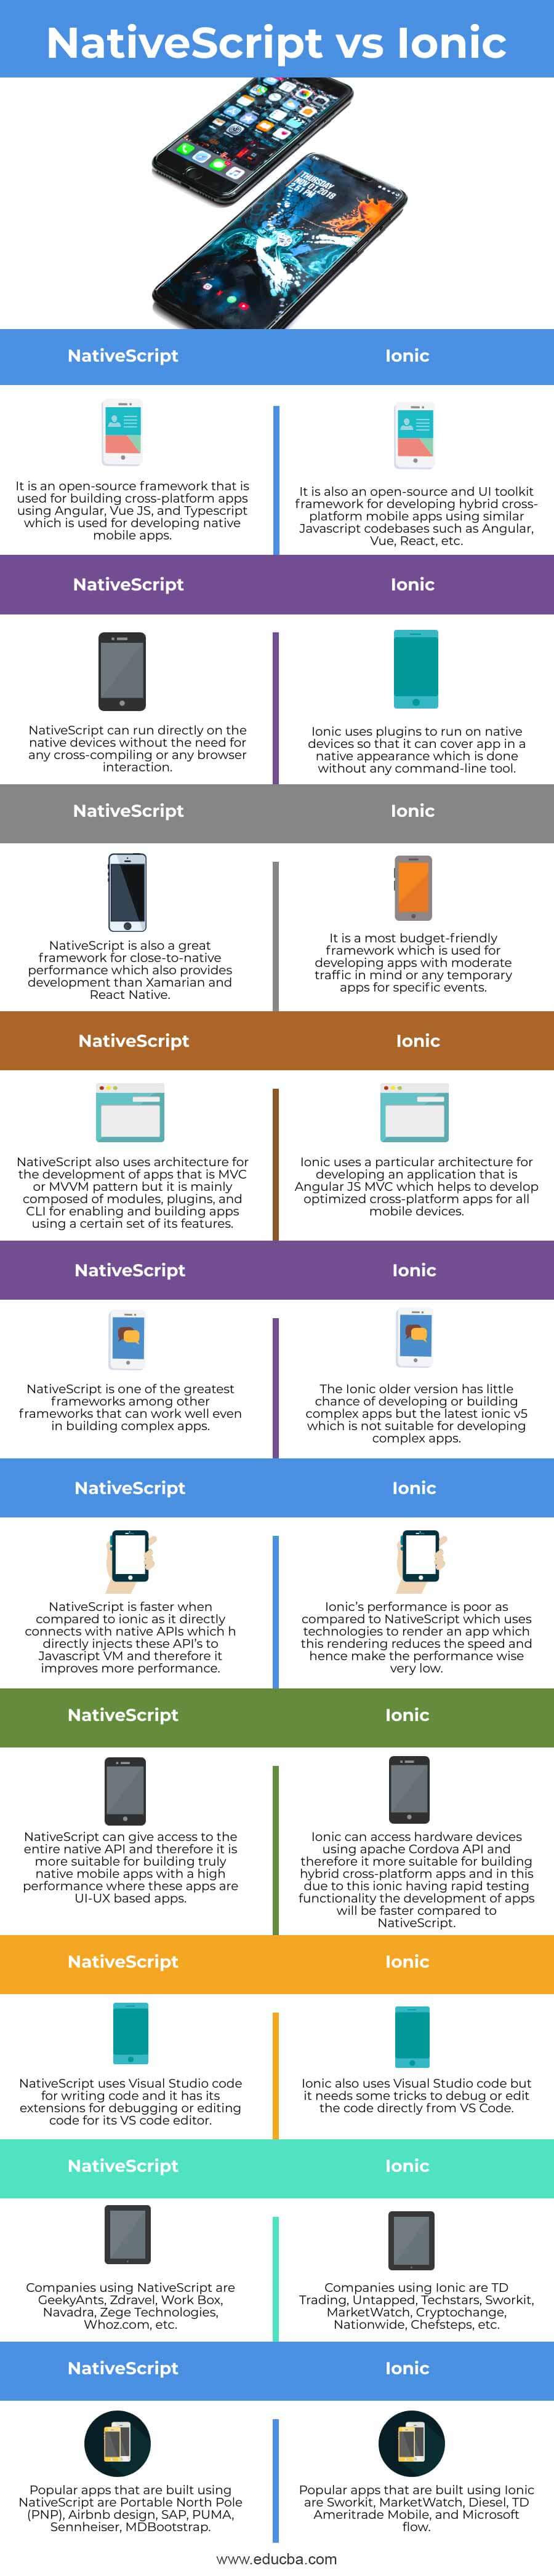 NativeScript-vs-Ionic-info